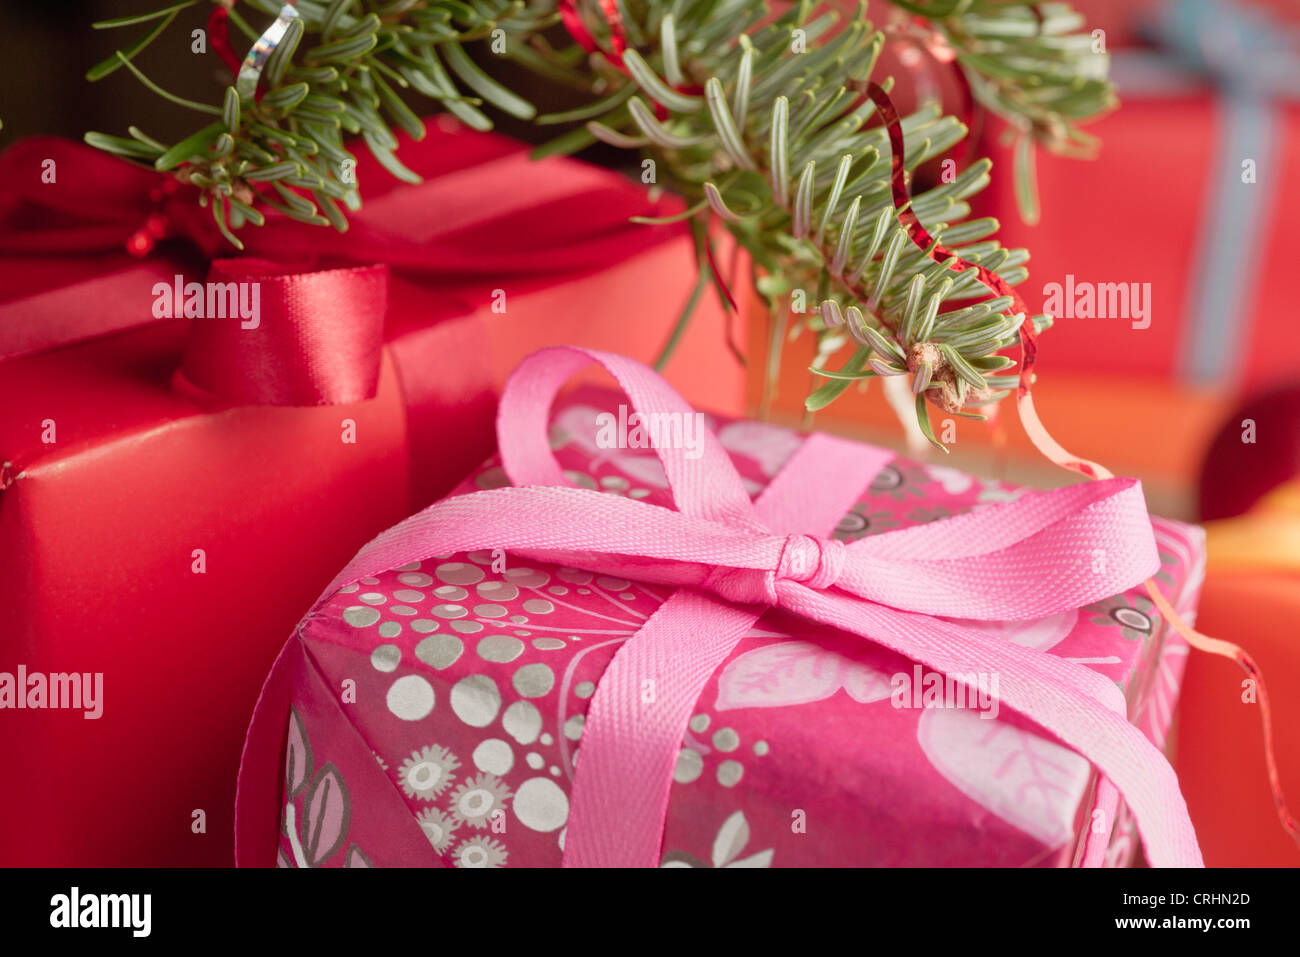 Festlich verpackte Weihnachtsgeschenke, close-up Stockfoto